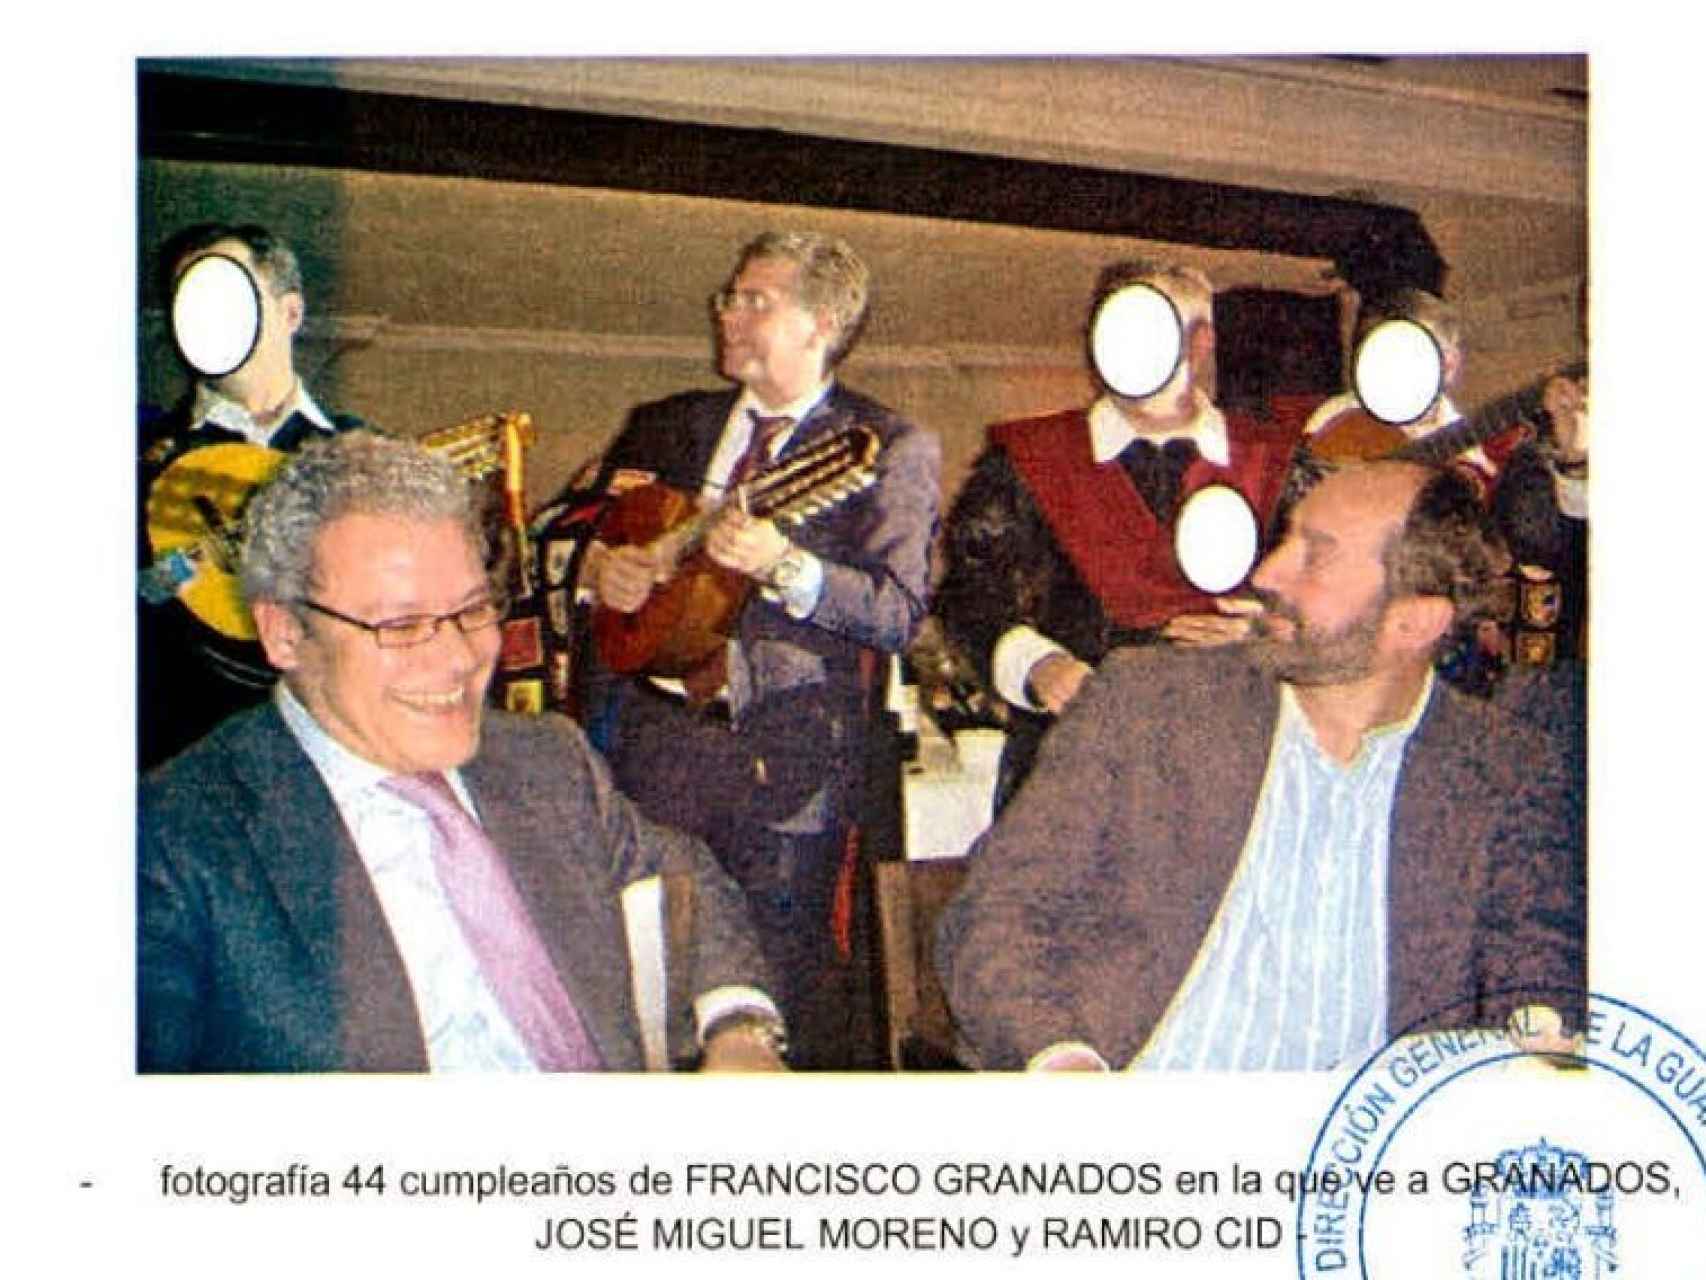 Francisco Granados durante su 44 cumpleaños tocando la bandurria